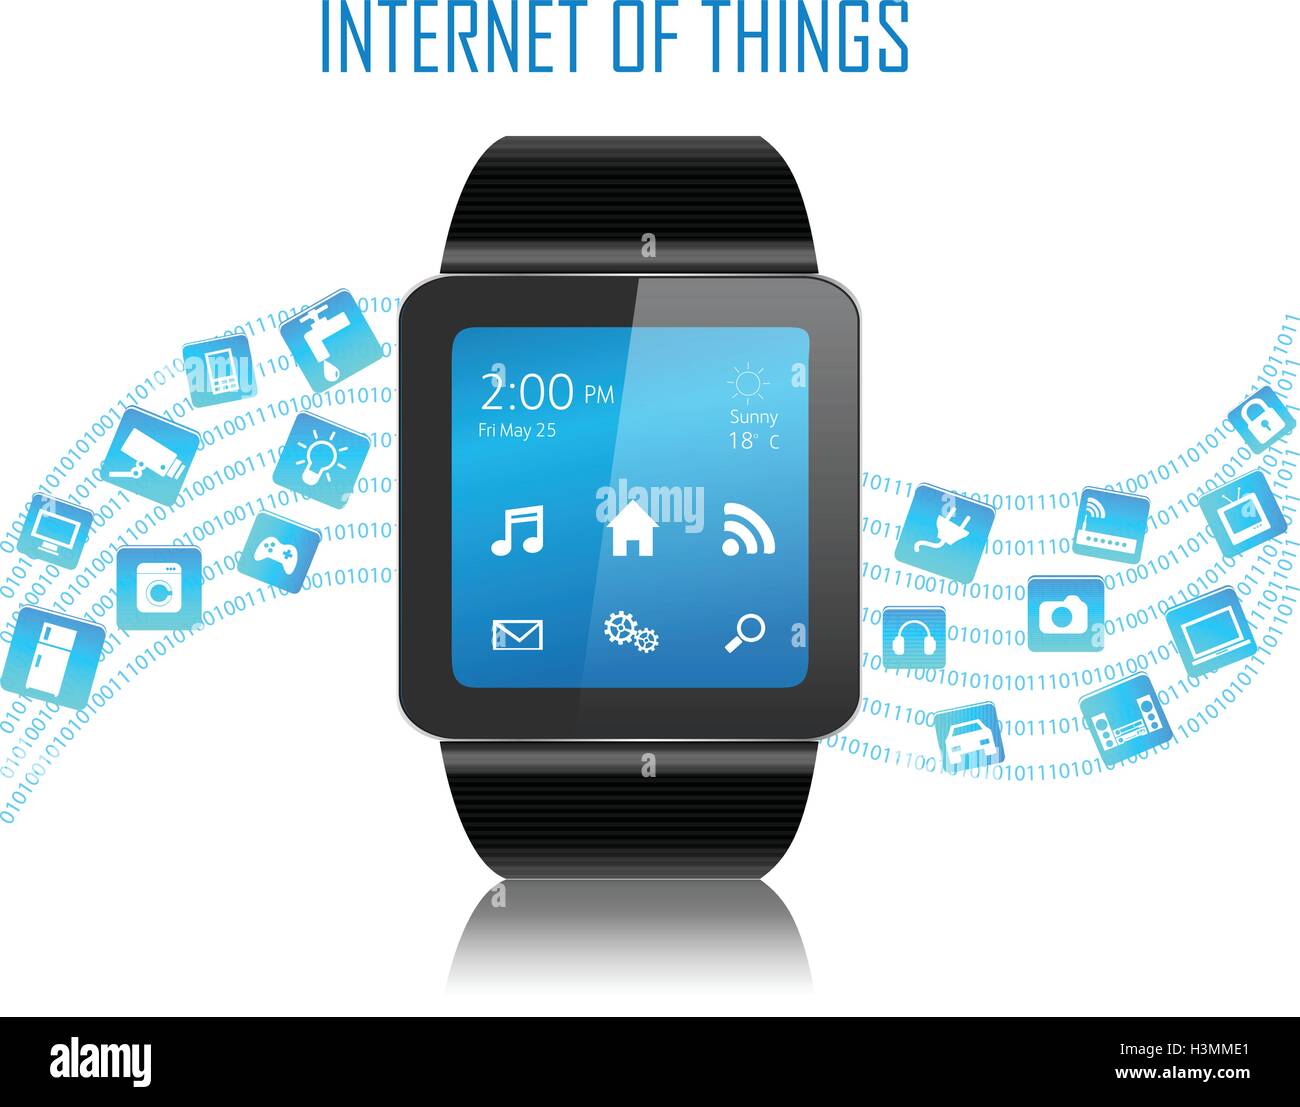 Smartwatch mit Internet der Dinge (IoT) Symbole miteinander verbinden. Internet-Networking-Konzept. Stock Vektor